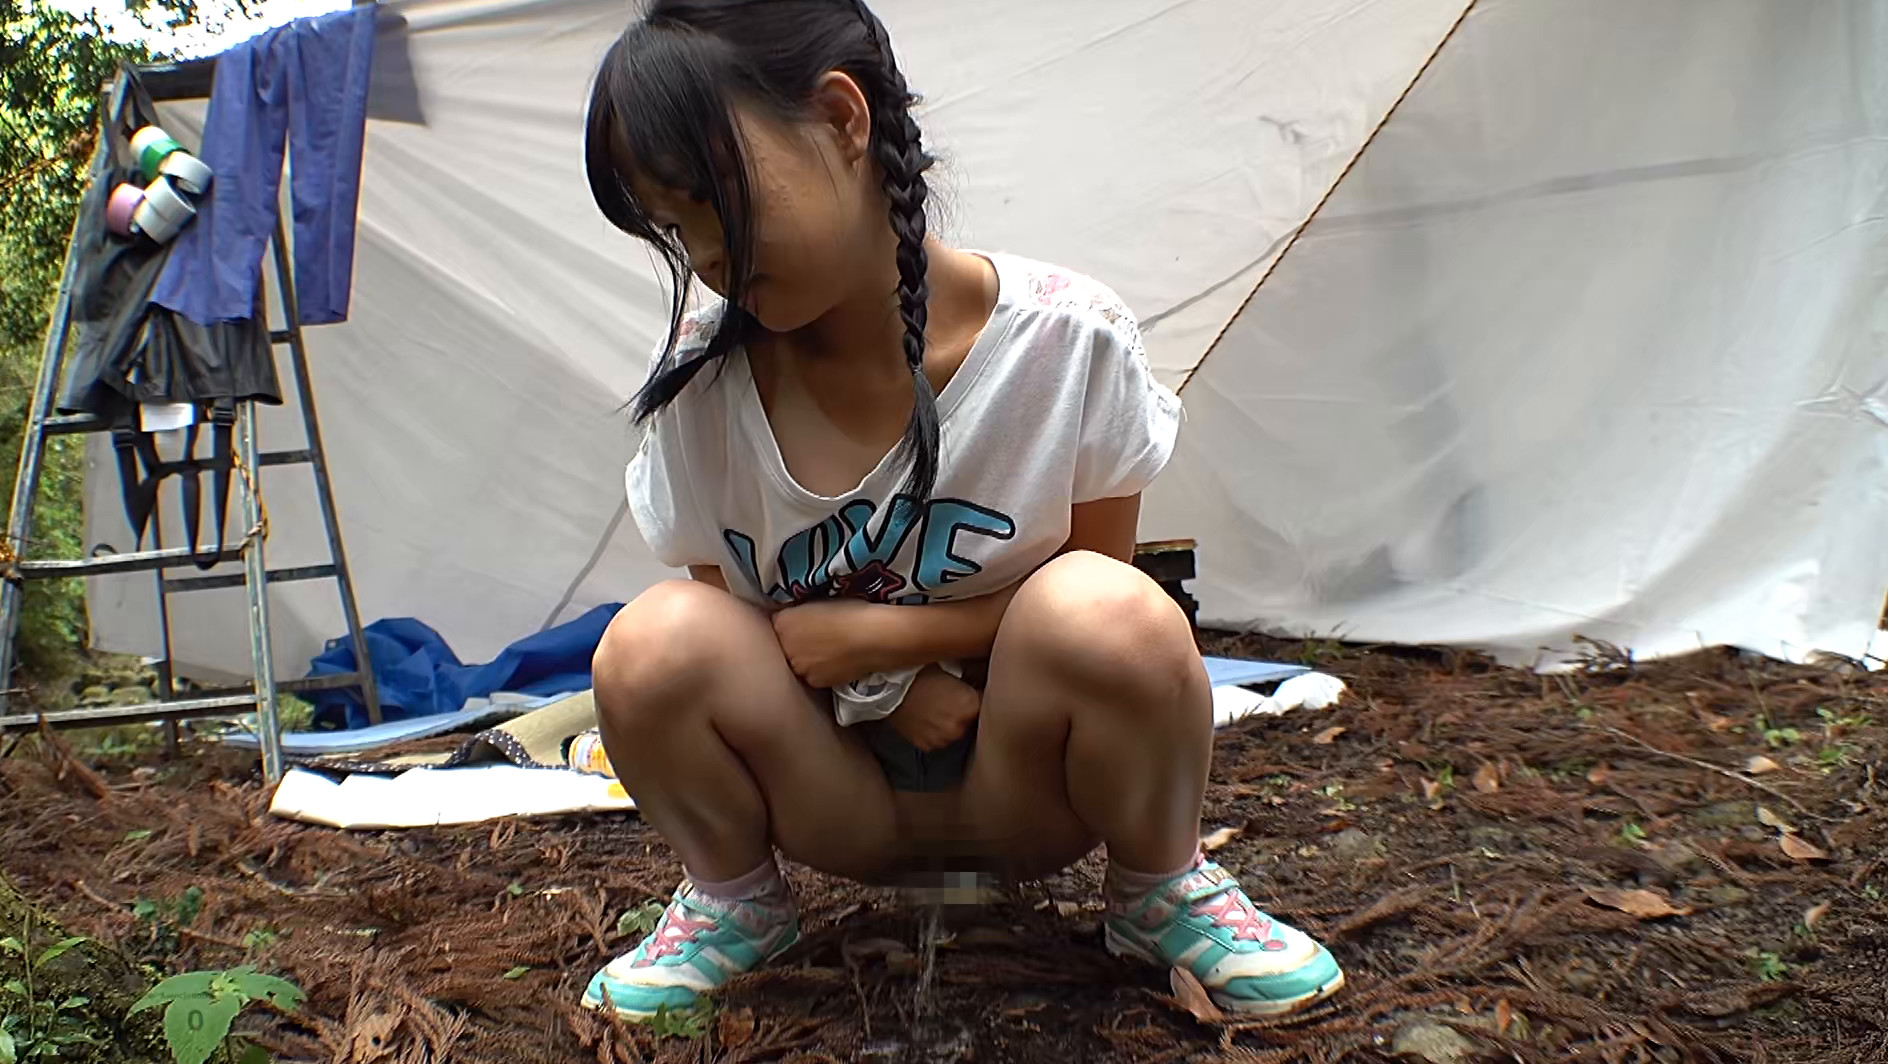 夏休みキャンプ場管理人による日焼け美少女野外わいせつ映像